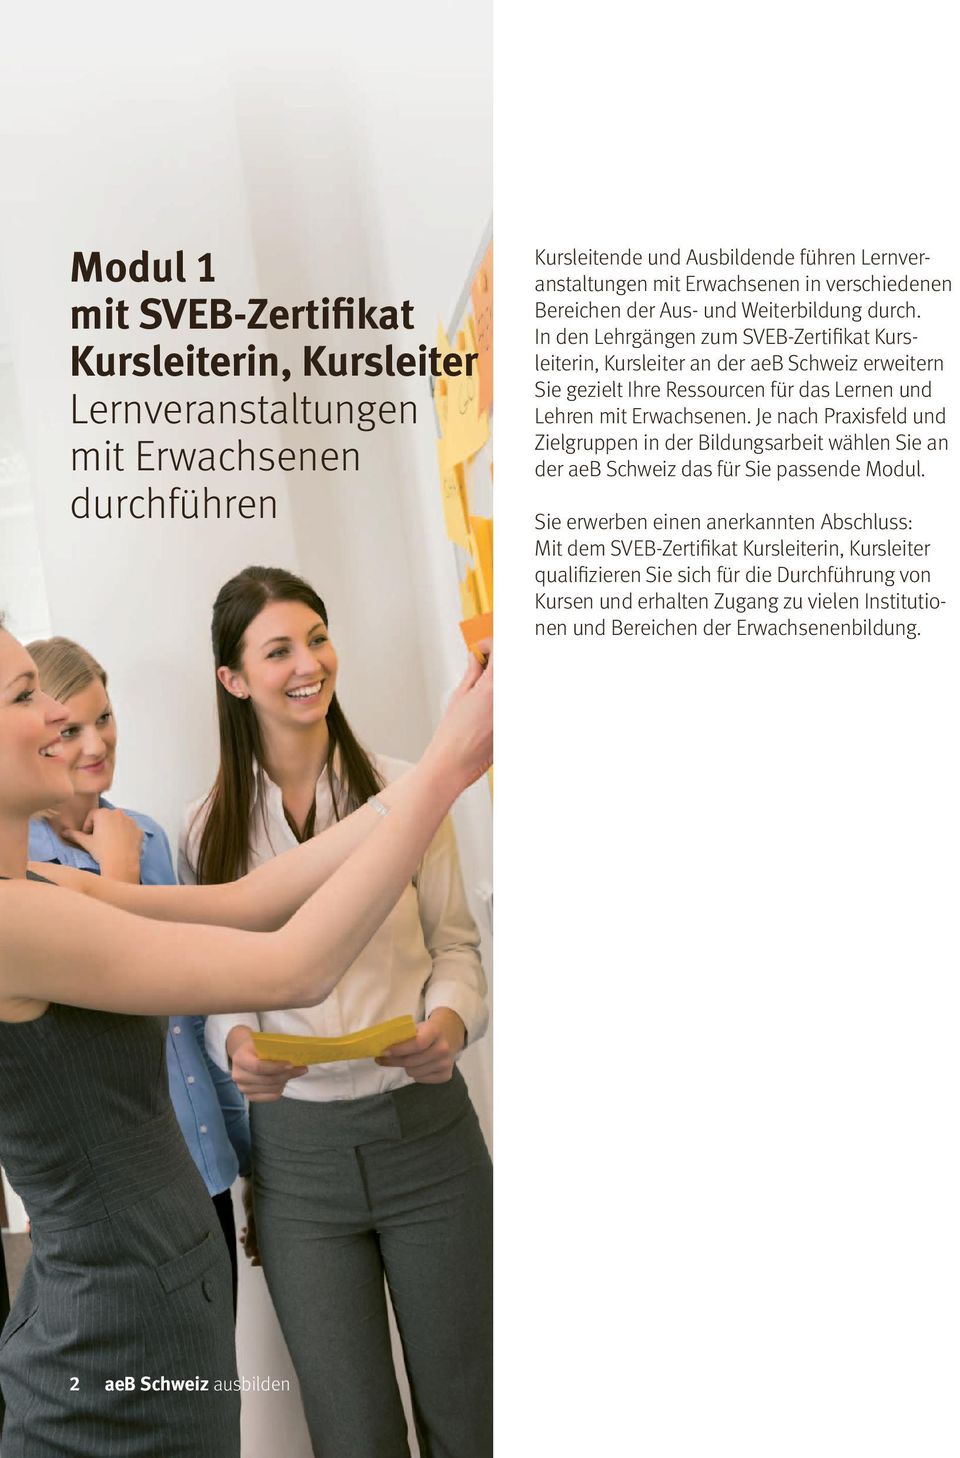 In den Lehrgängen zum SVEB-Zertifikat Kursleiterin, Kursleiter an der aeb Schweiz erweitern Sie gezielt Ihre Ressourcen für das Lernen und Lehren mit Erwachsenen.